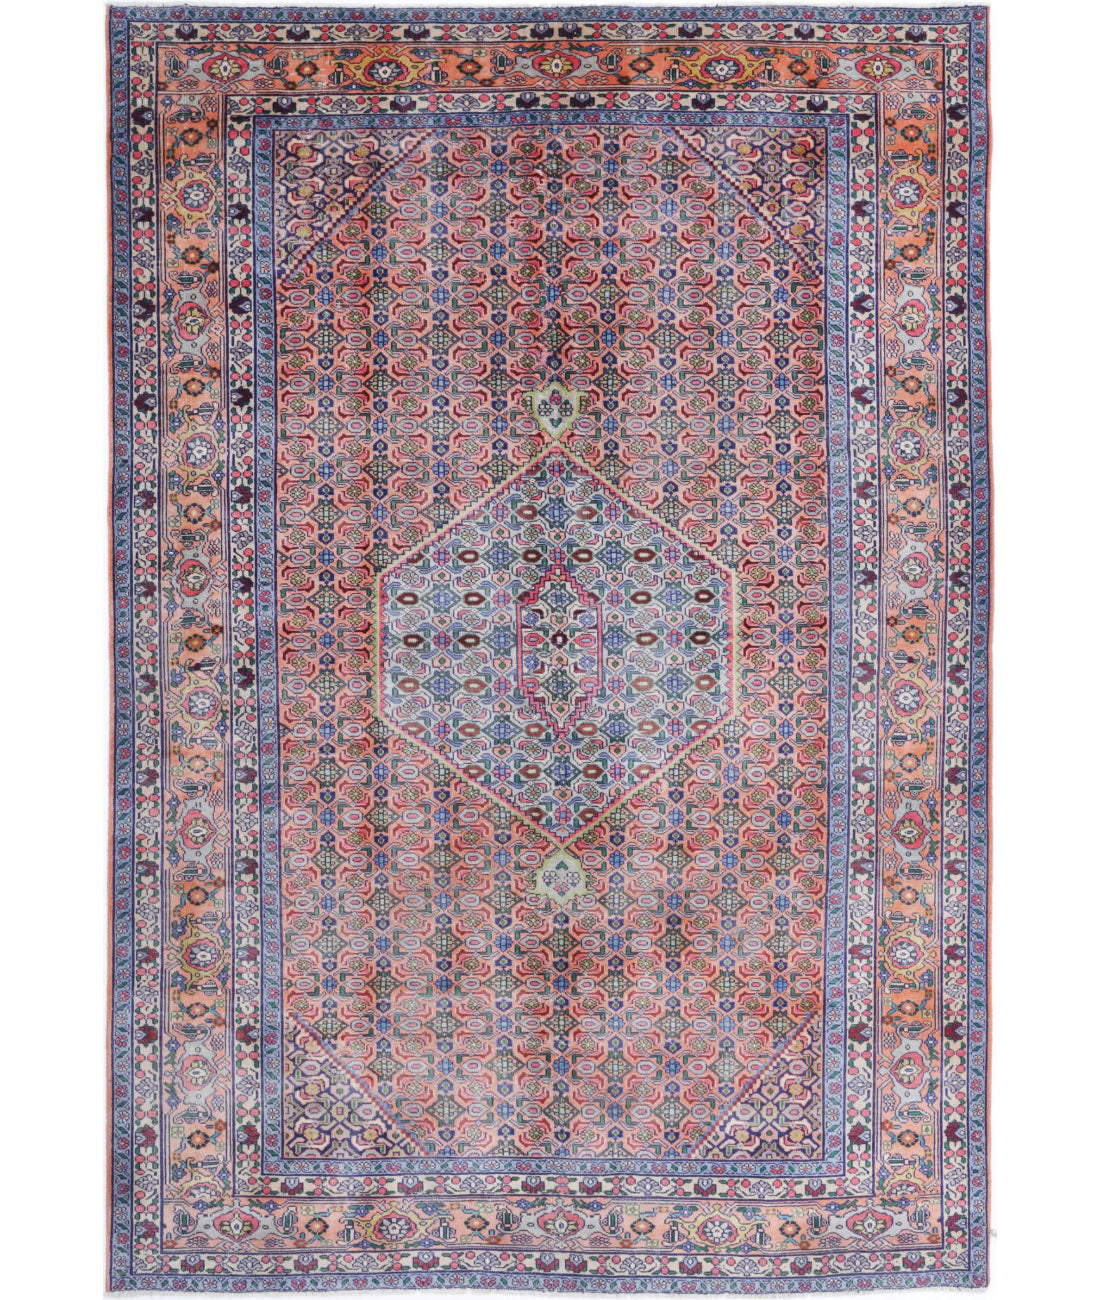 Hand Knotted Persian Bijar Wool Rug - 6'1'' x 9'3'' 6'1'' x 9'3'' (183 X 278) / Peach / Blue